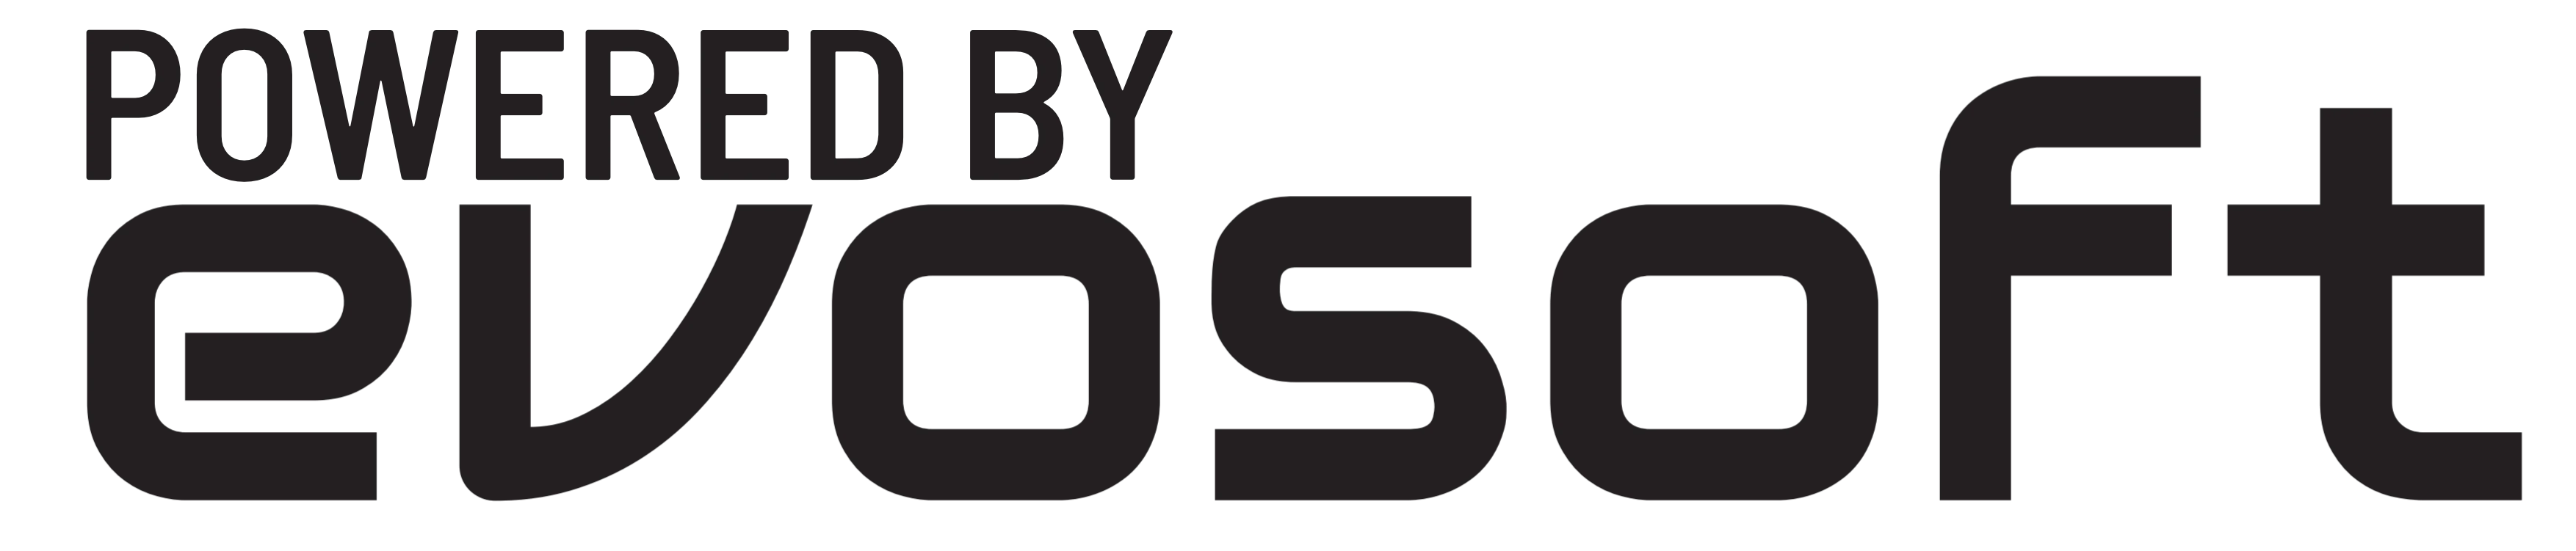 logo-evosoft-essential